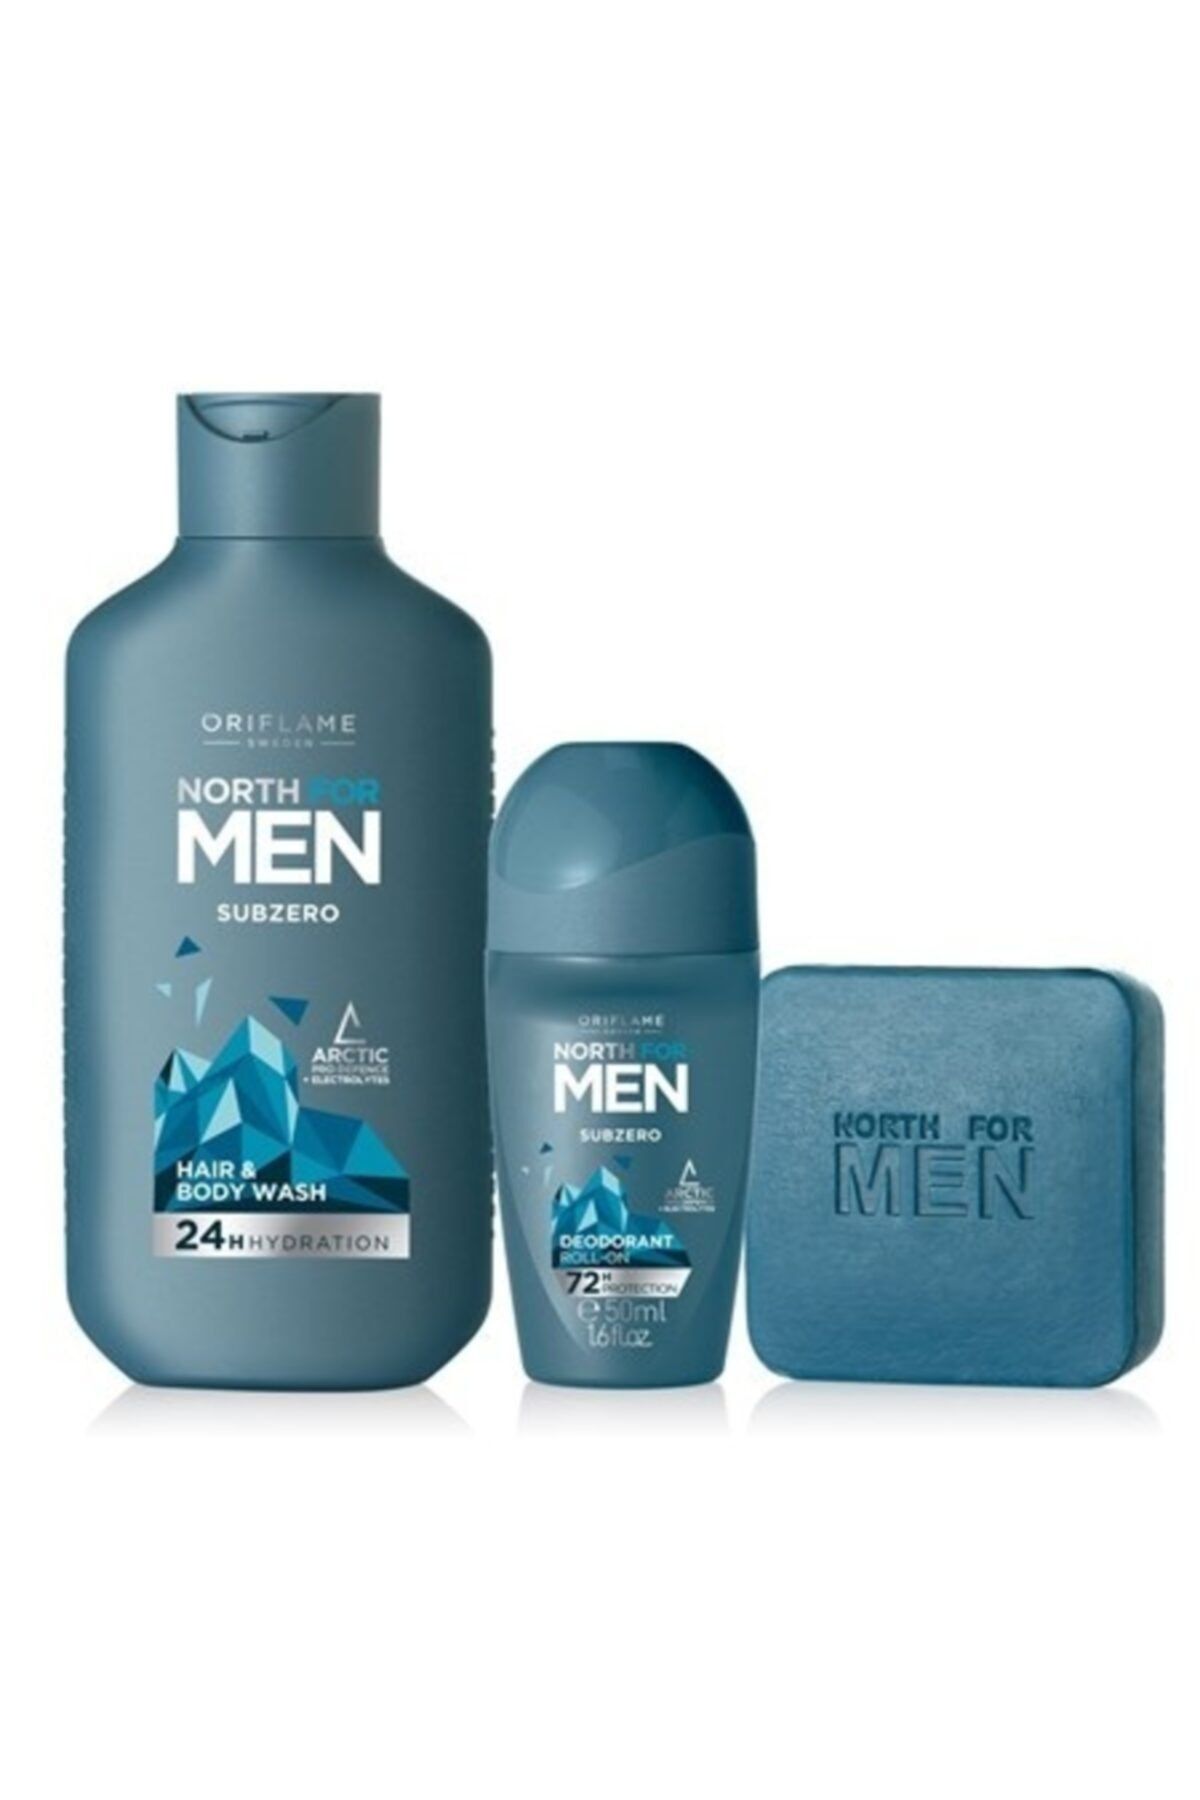 Oriflame Erkek Bakım Seti ( Nort For Men Subzero Saç Ve Vücut Şampuanı + Subzero Sabun+ Roll On Deodorant)